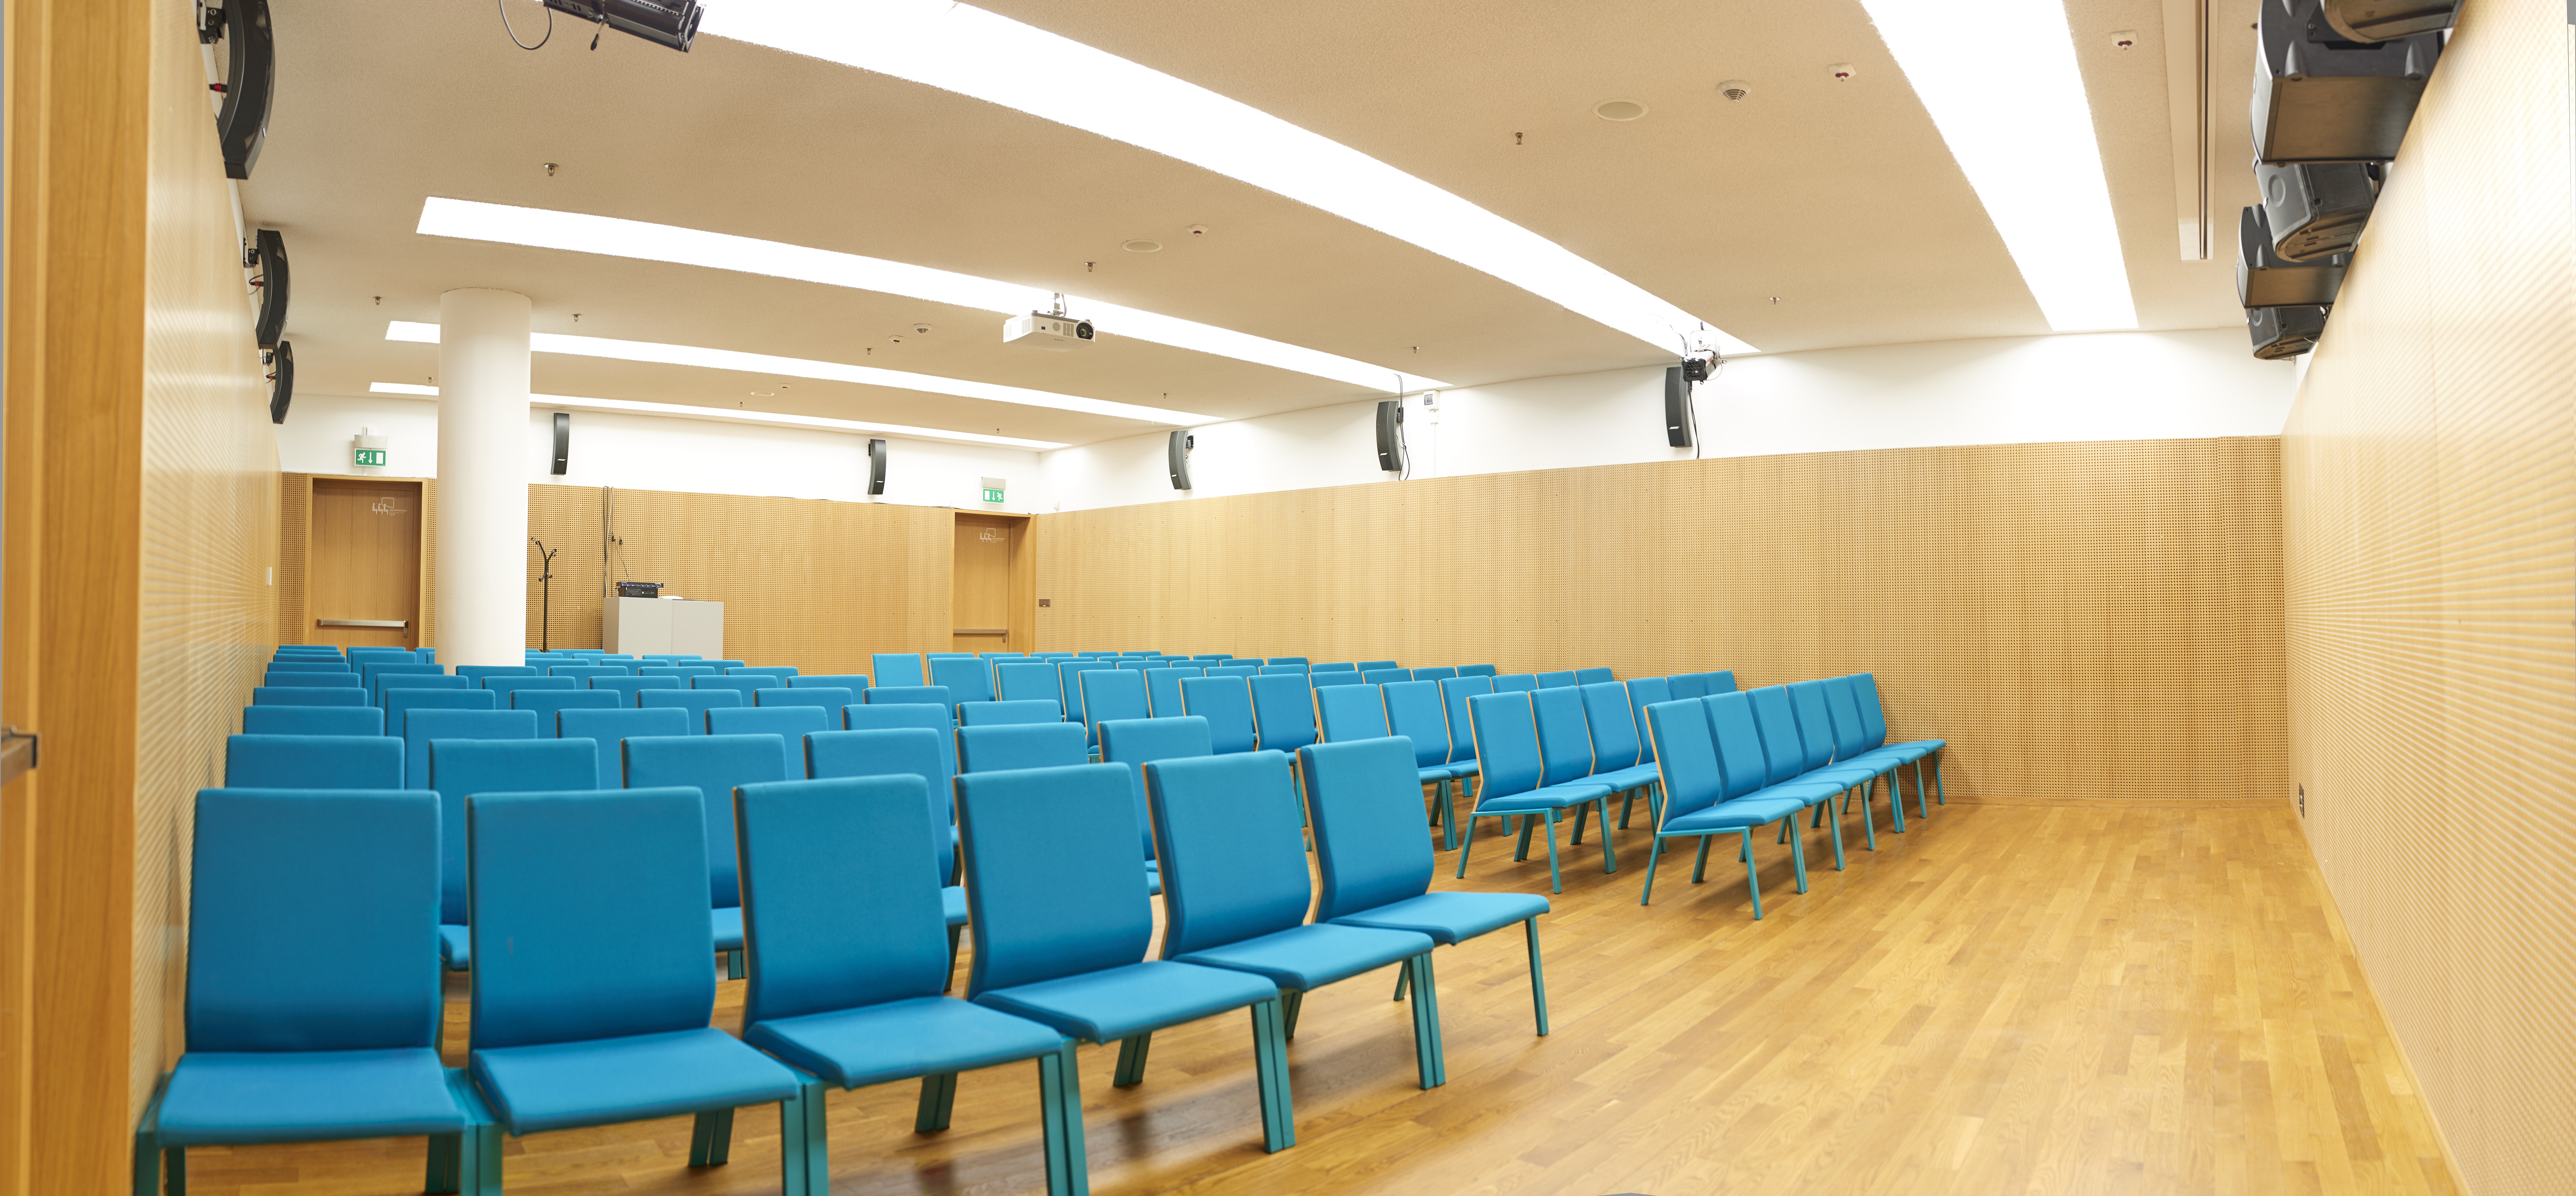 Sala konferencyjna A - widok na krzesła w kolorze niebiesko-zielonym. Krzesła stoją w rzędach. Sala jest pusta.